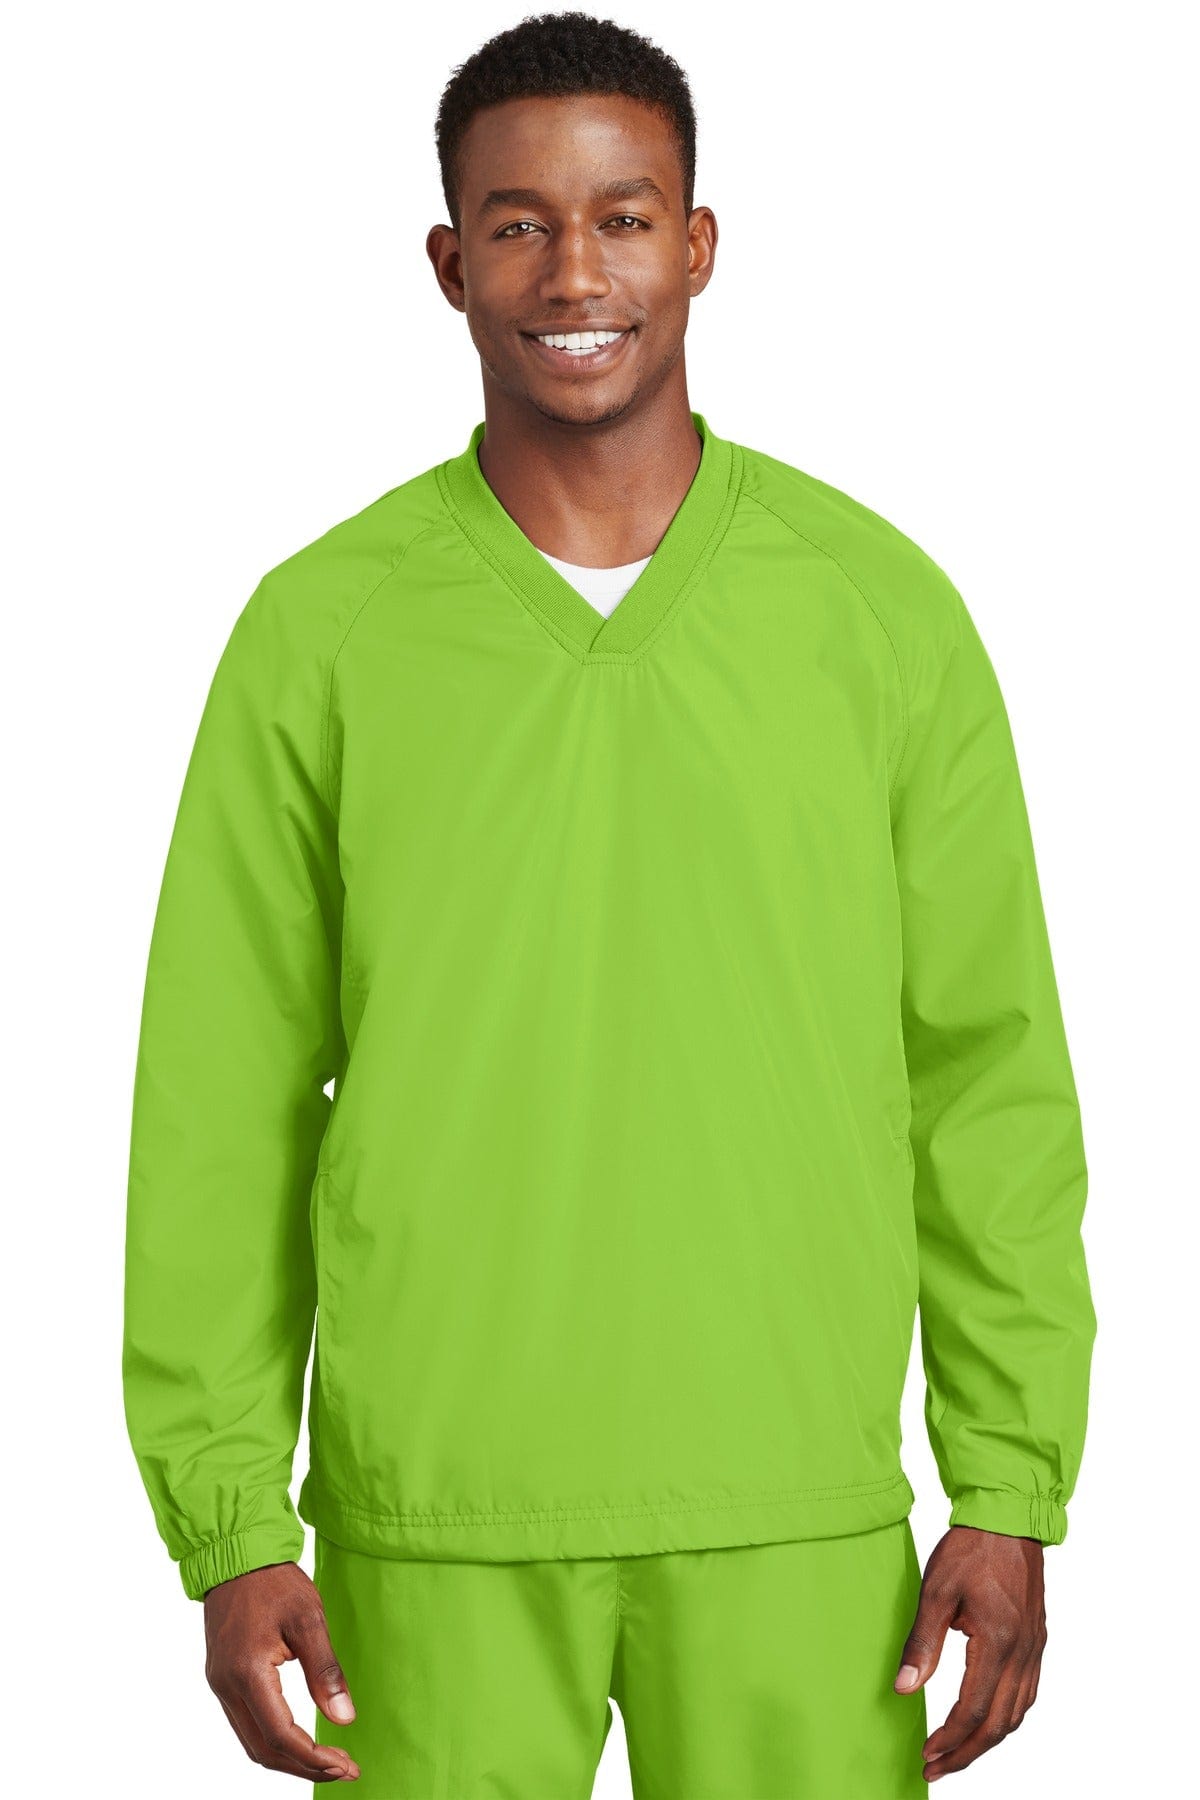 Sport-Tek ® V-Neck Raglan Wind Shirt. JST72, Basic Colors